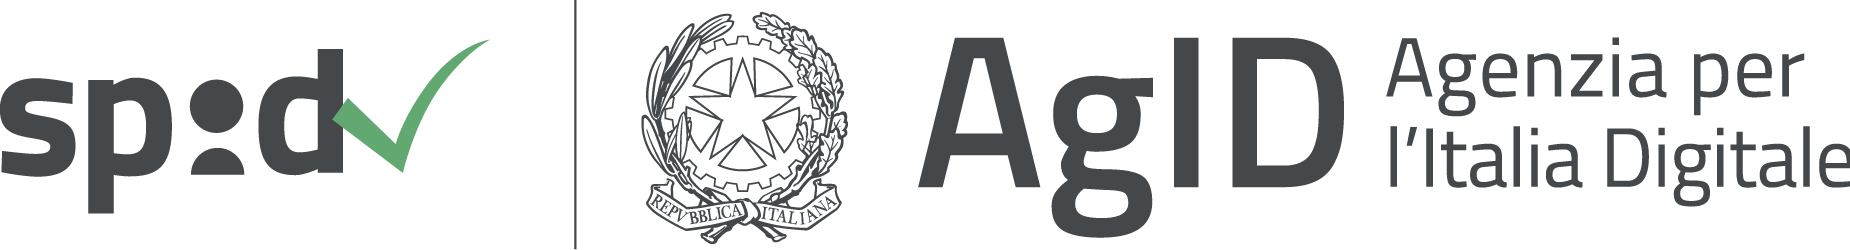 Logo SPID e Agenzia per l’Italia Digitale